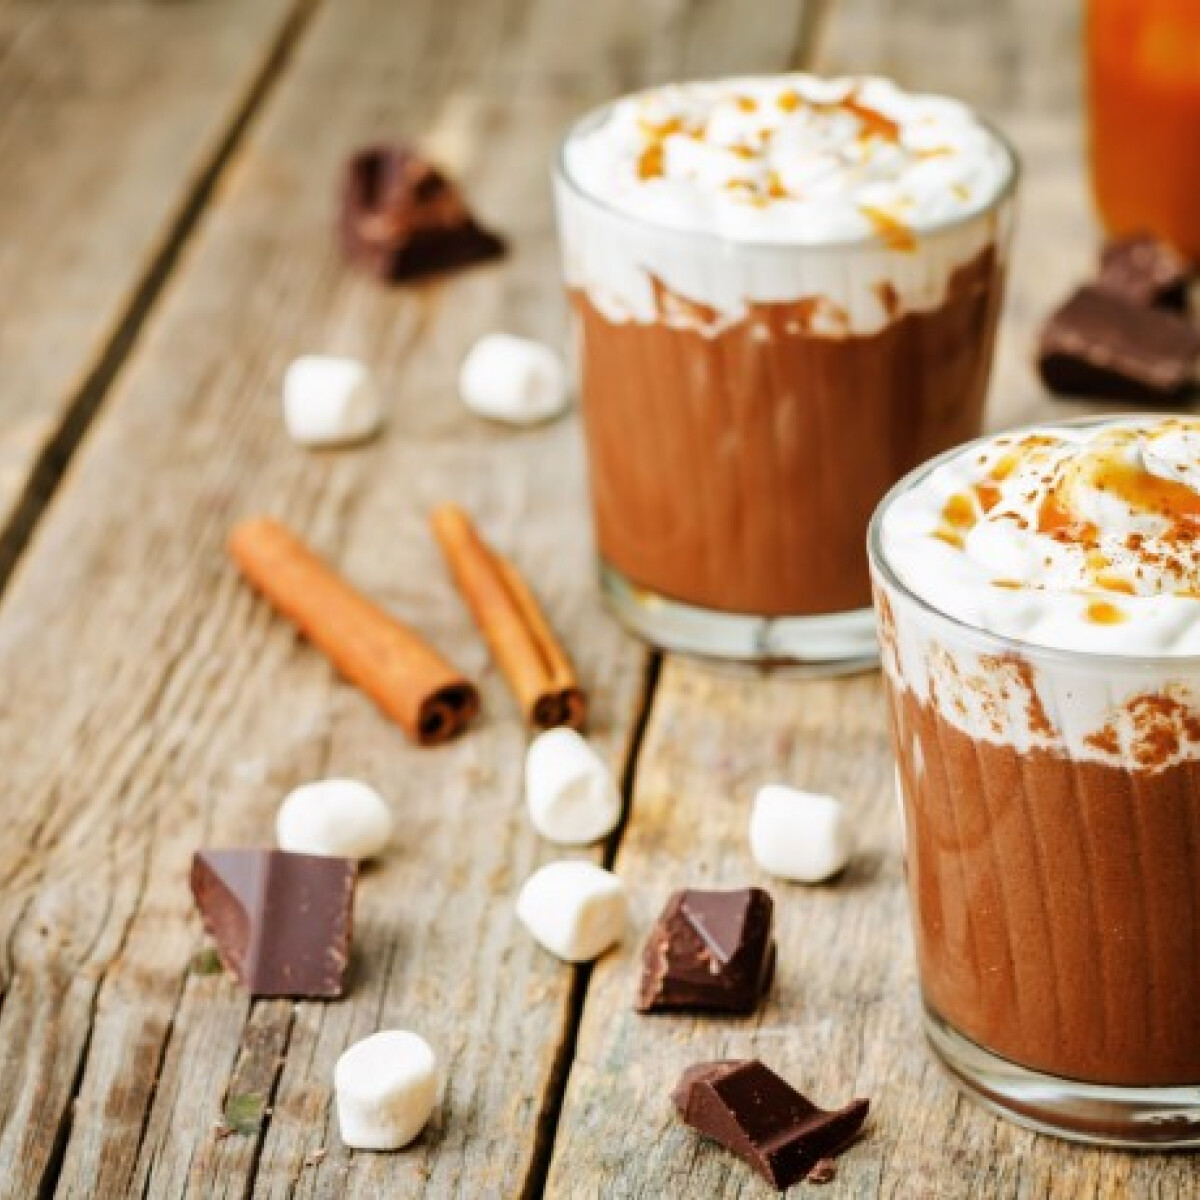 Ez a 3 legjobb Starbuckos téli forróital receptje - készítsd el otthon a kedvenced, házilag!